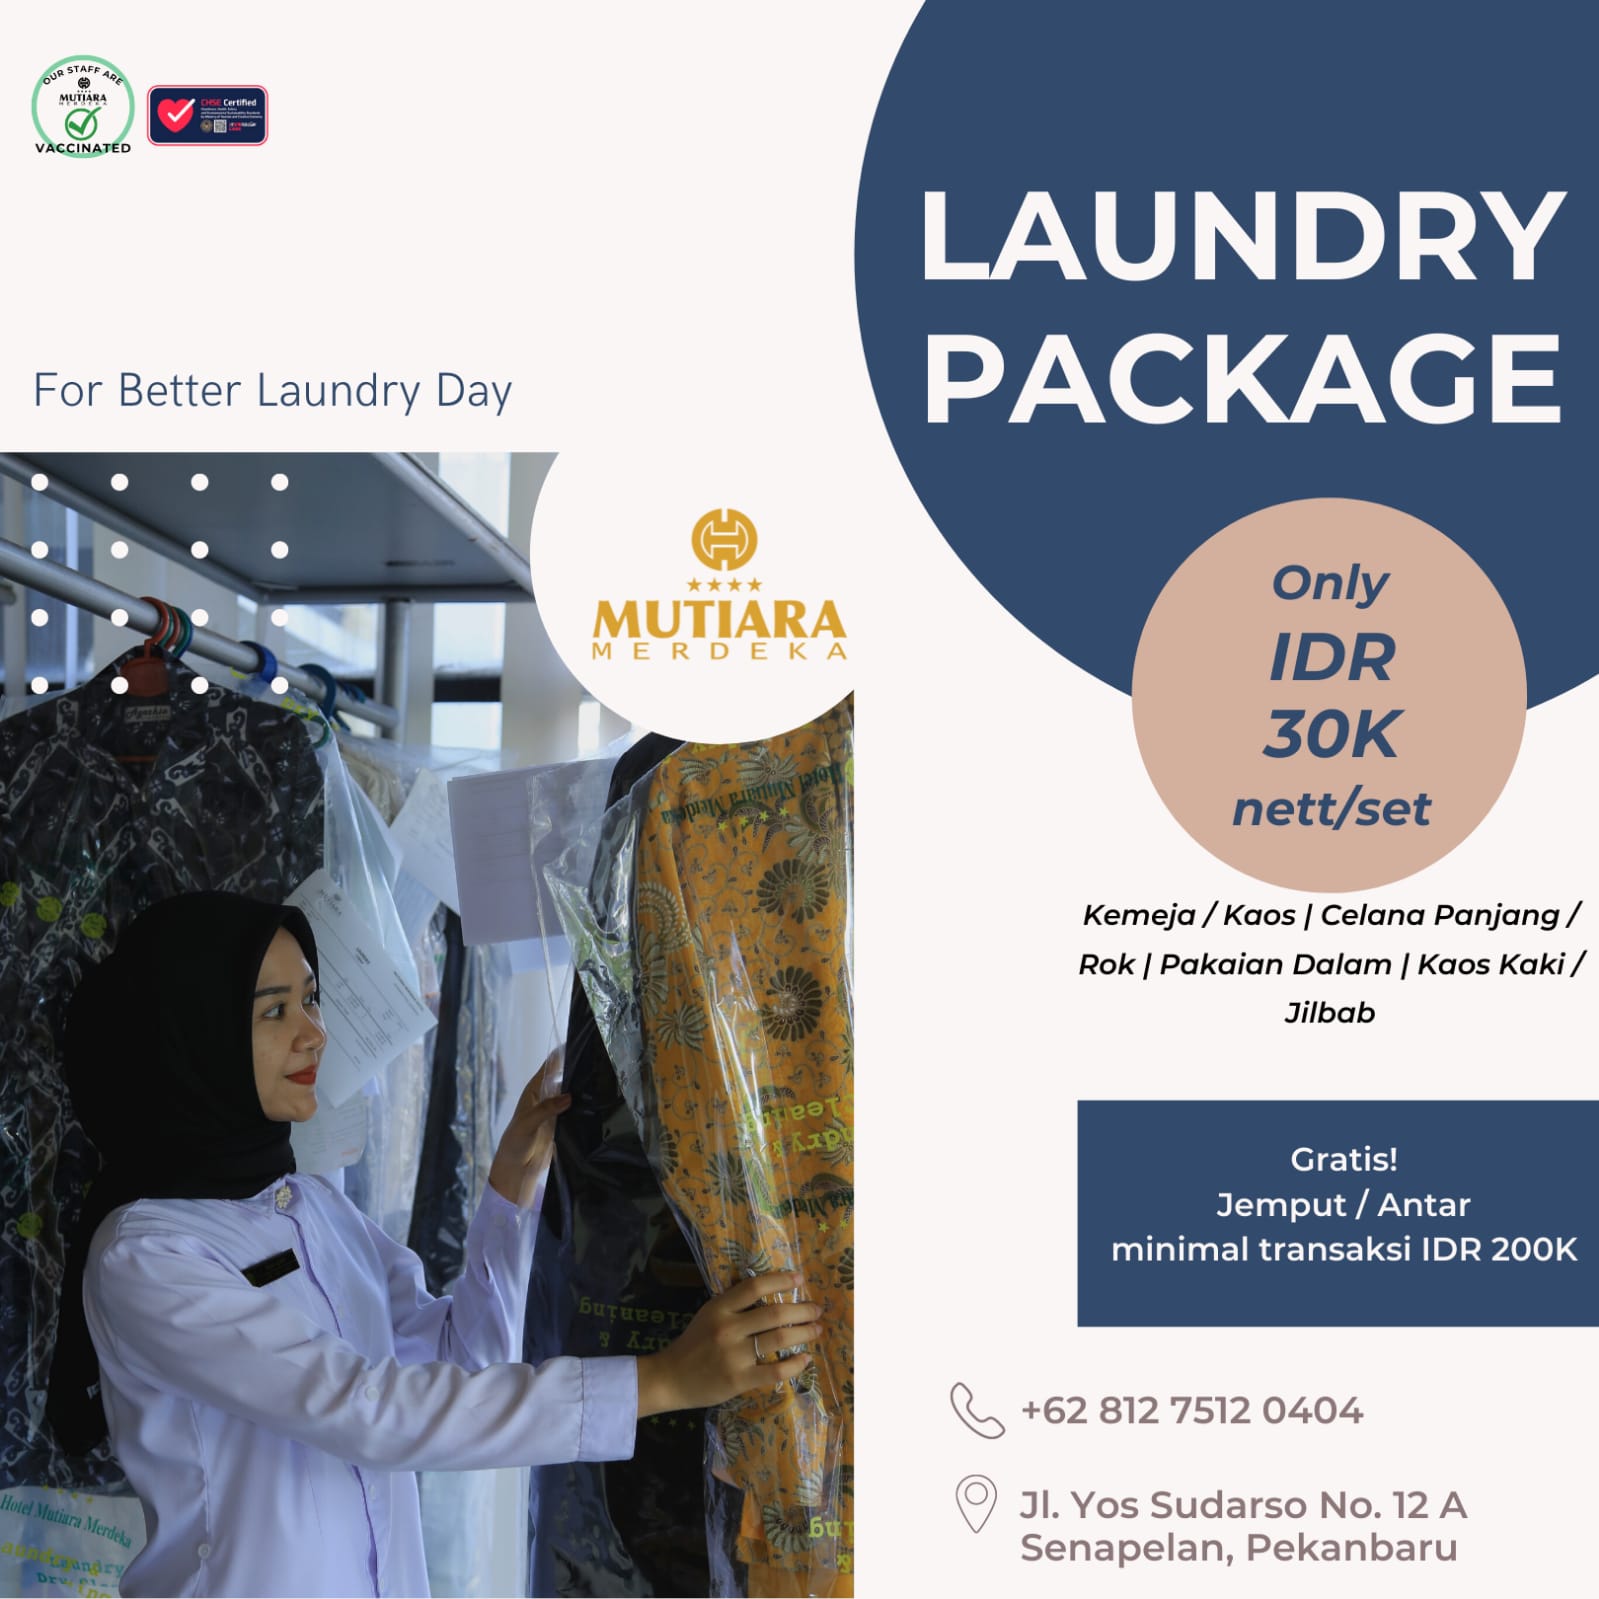 Tanpa Sibuk Cuci Pakaian, Hotel Mutiara Merdeka Menyediakan Laundry Package